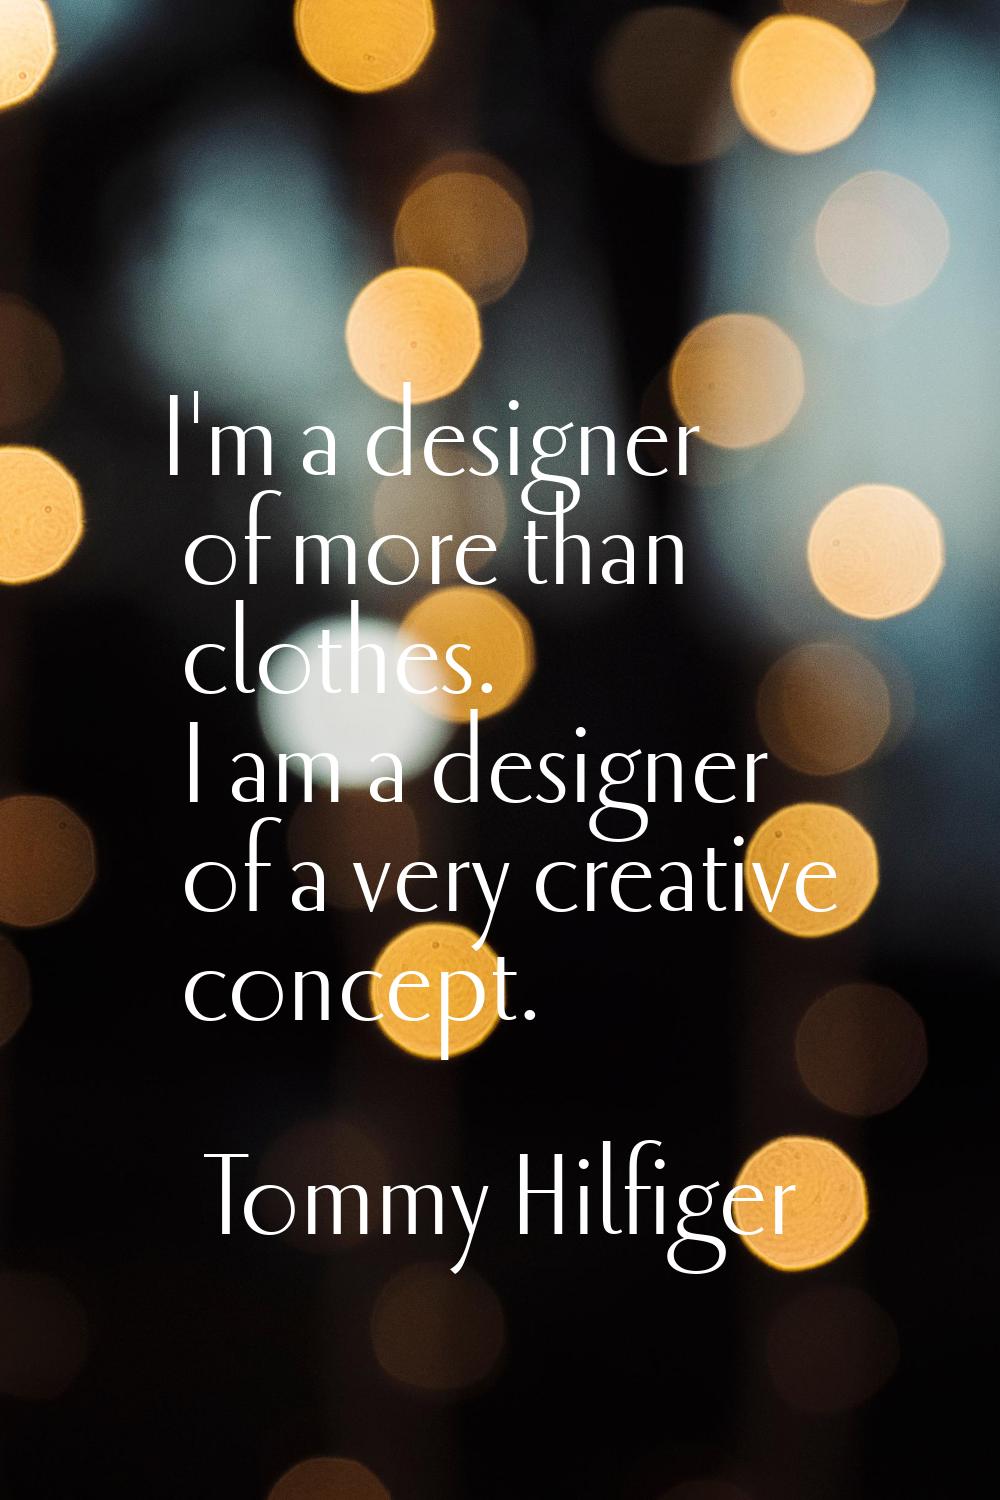 I'm a designer of more than clothes. I am a designer of a very creative concept.